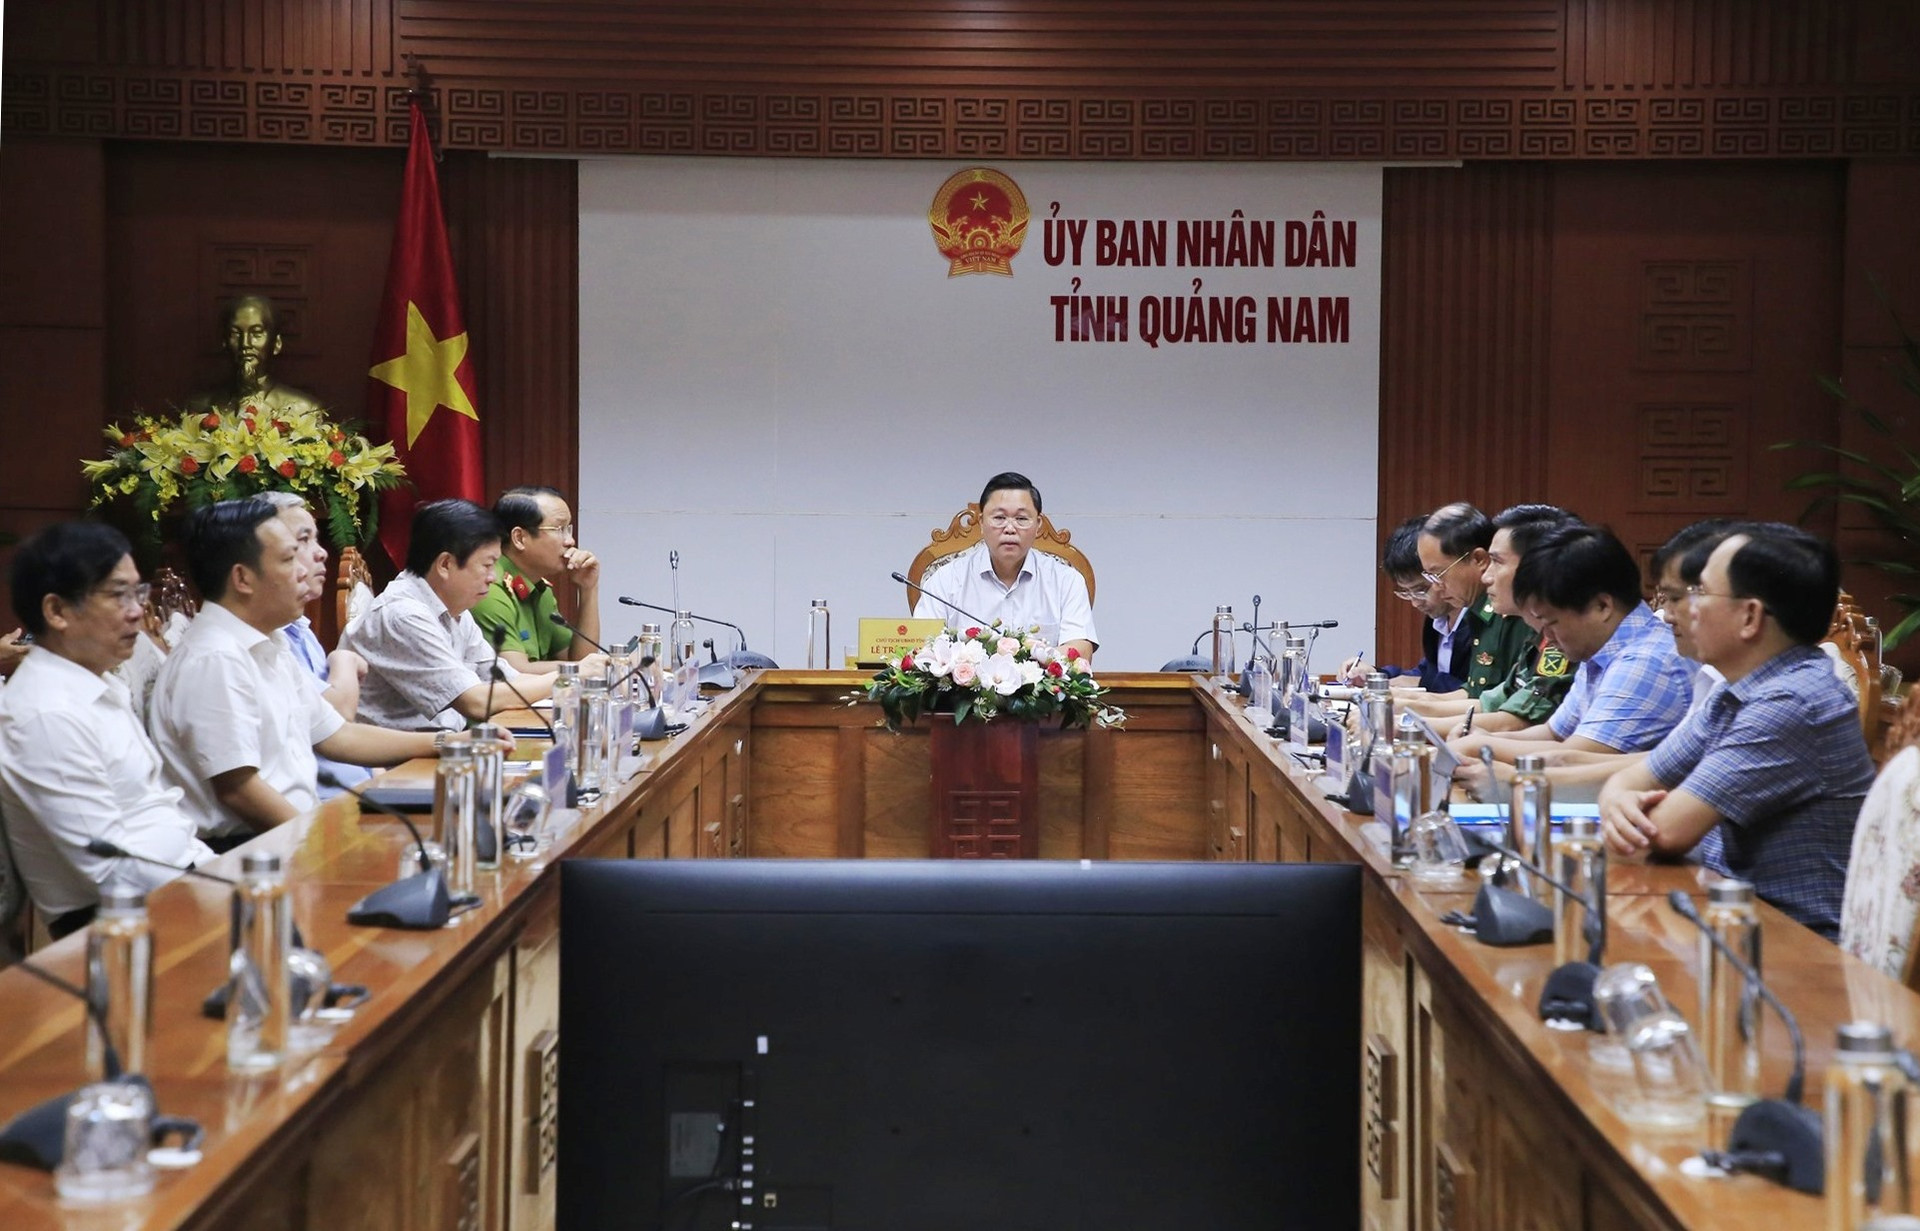 Chủ tịch UBND tỉnh Lê Trí Thanh chủ trì điểm cầu trực tuyến tại UBND tỉnh. Ảnh: T.C